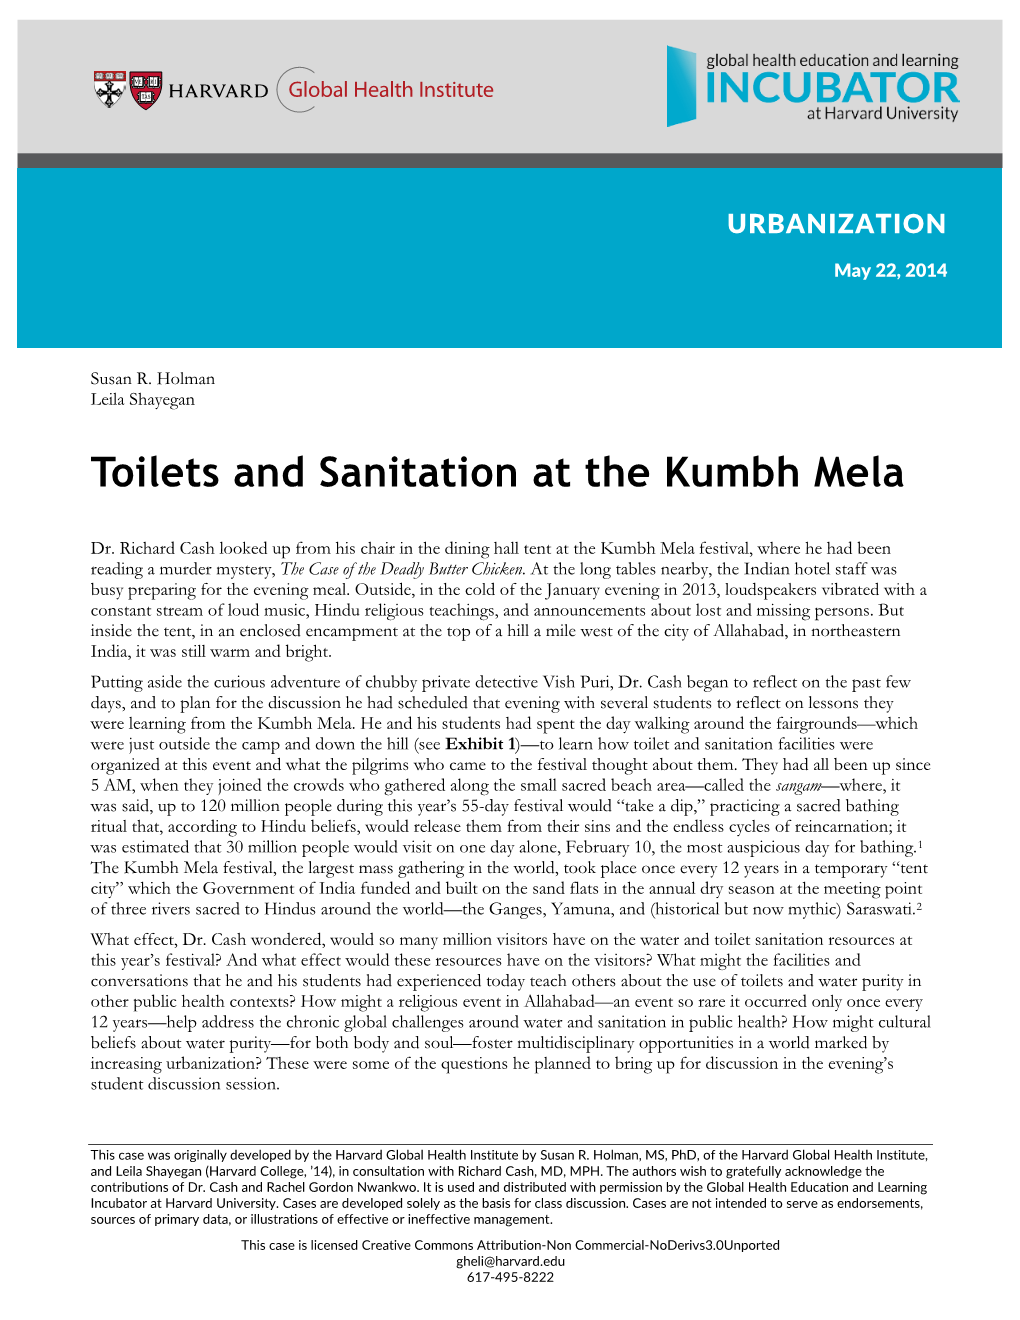 Toilets and Sanitation at the Kumbh Mela